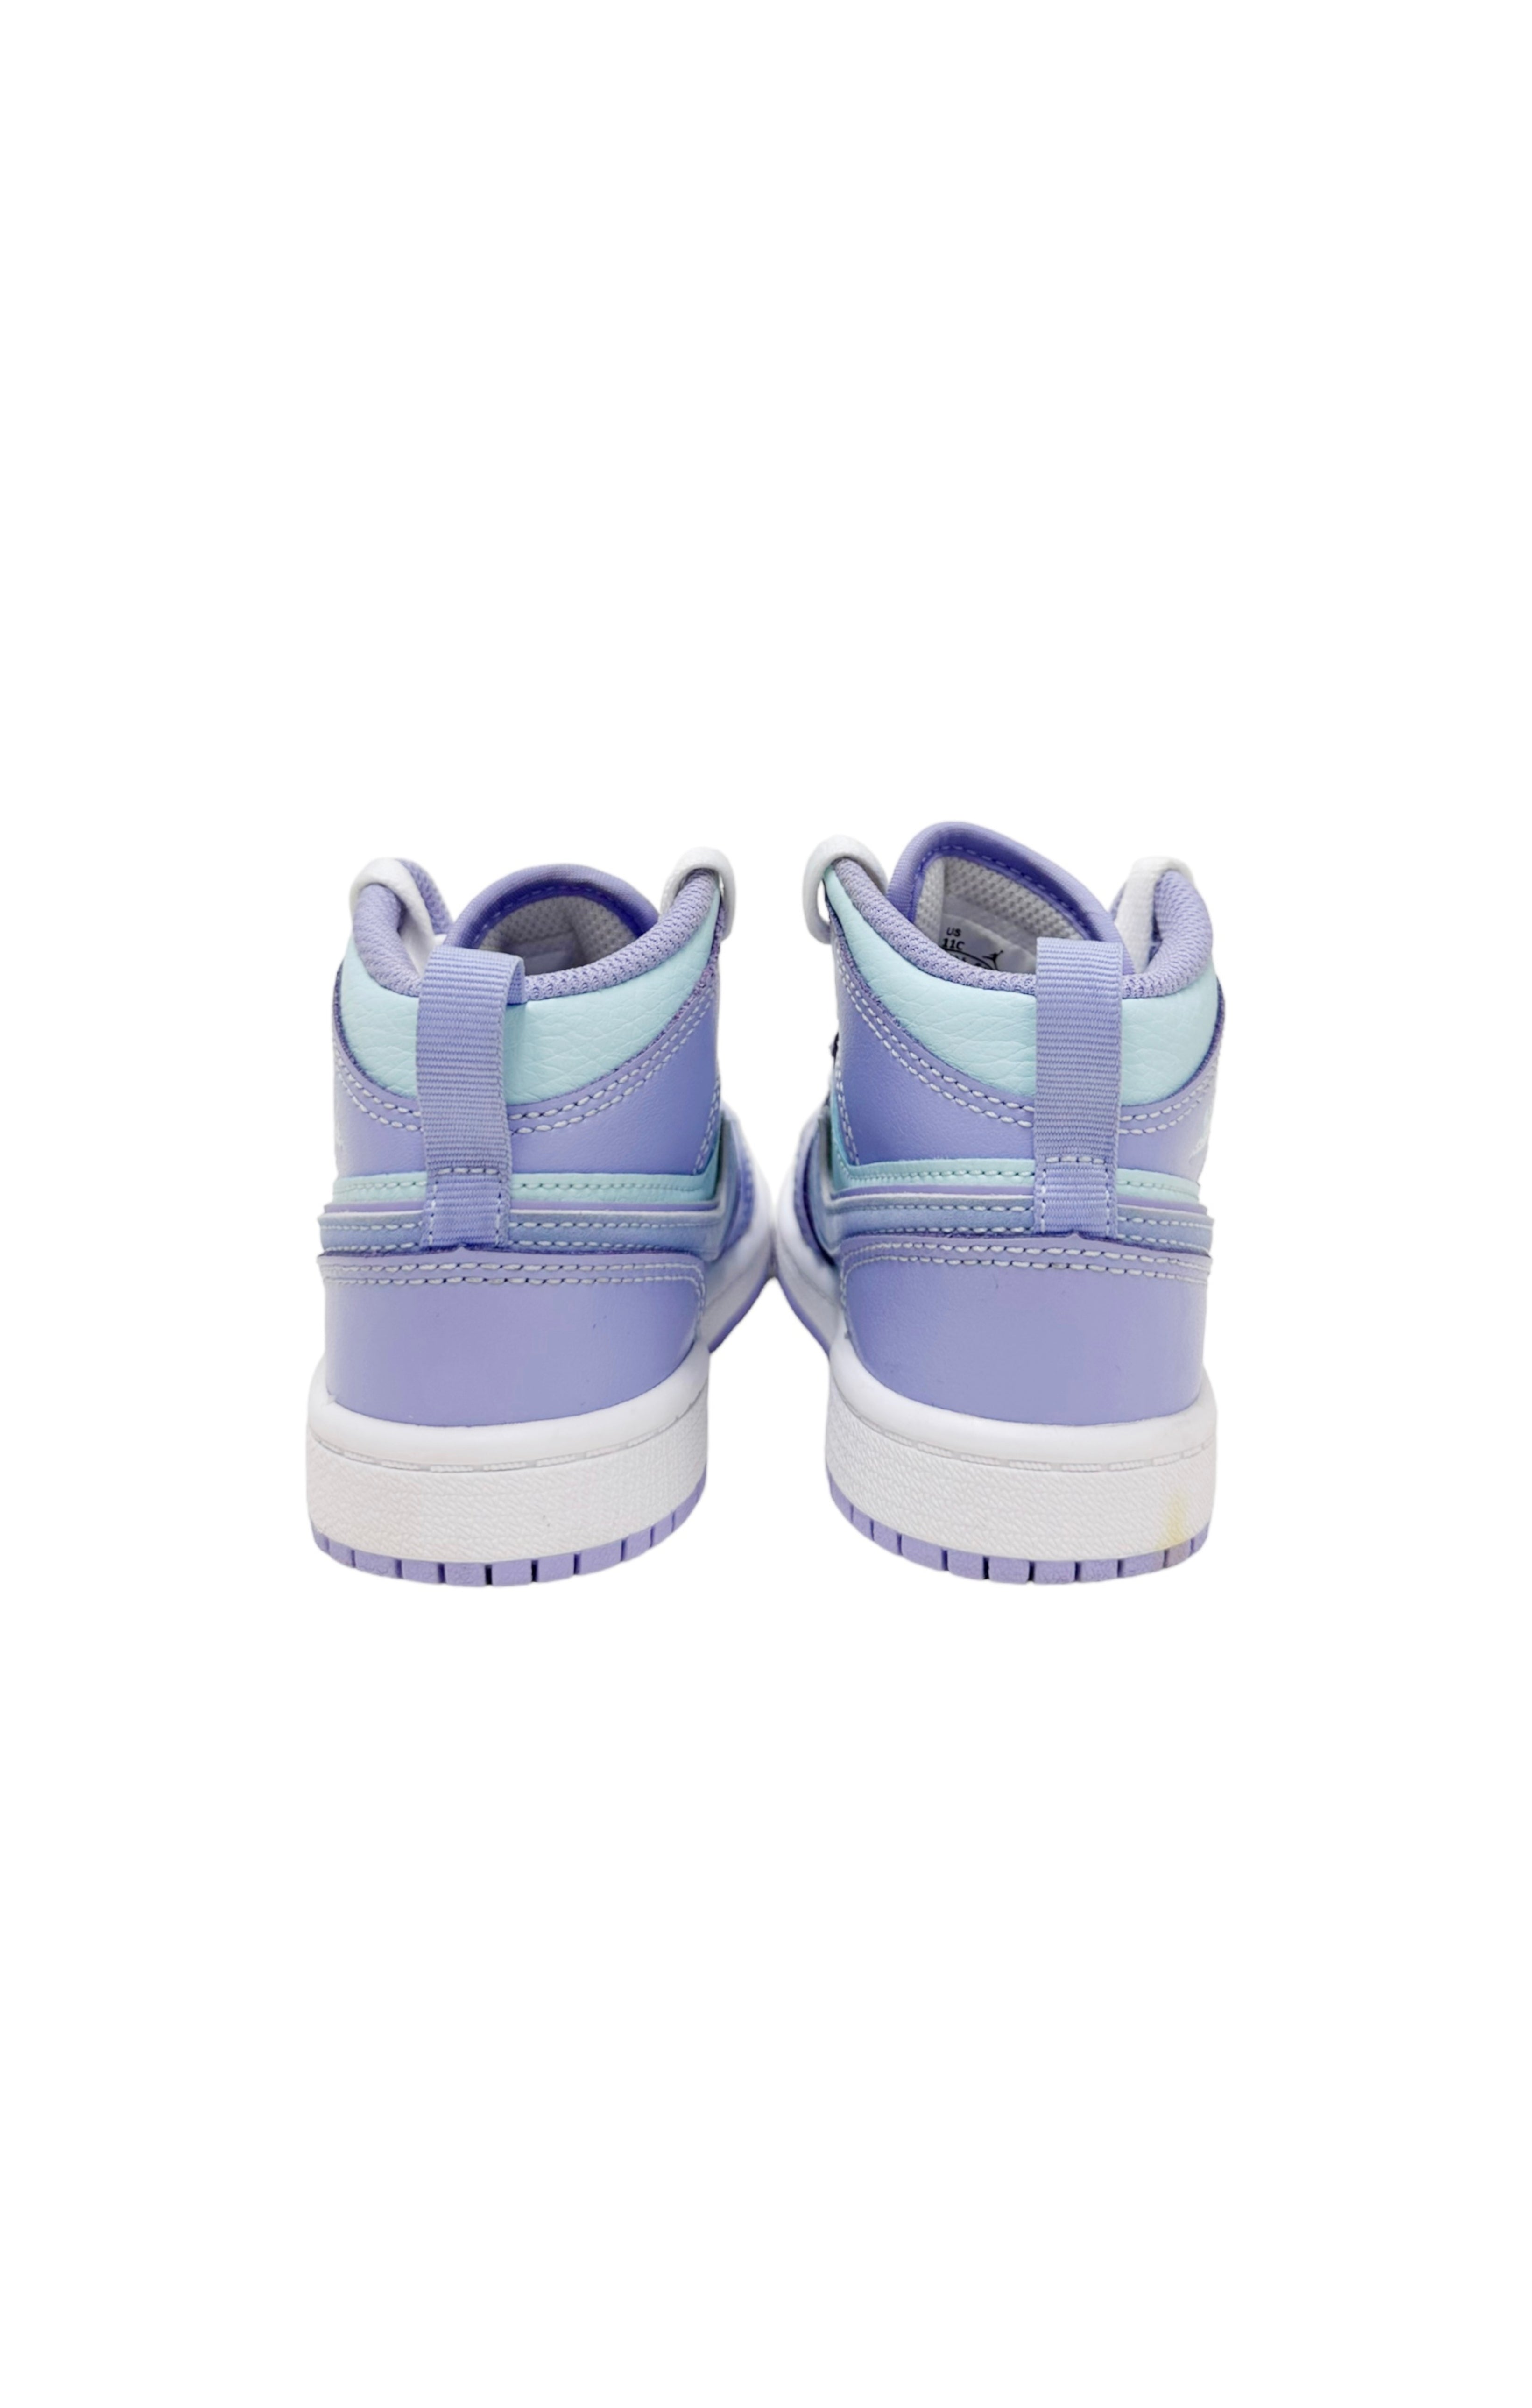 AIR JORDAN (RARE) Sneakers Size: Toddler US 11C